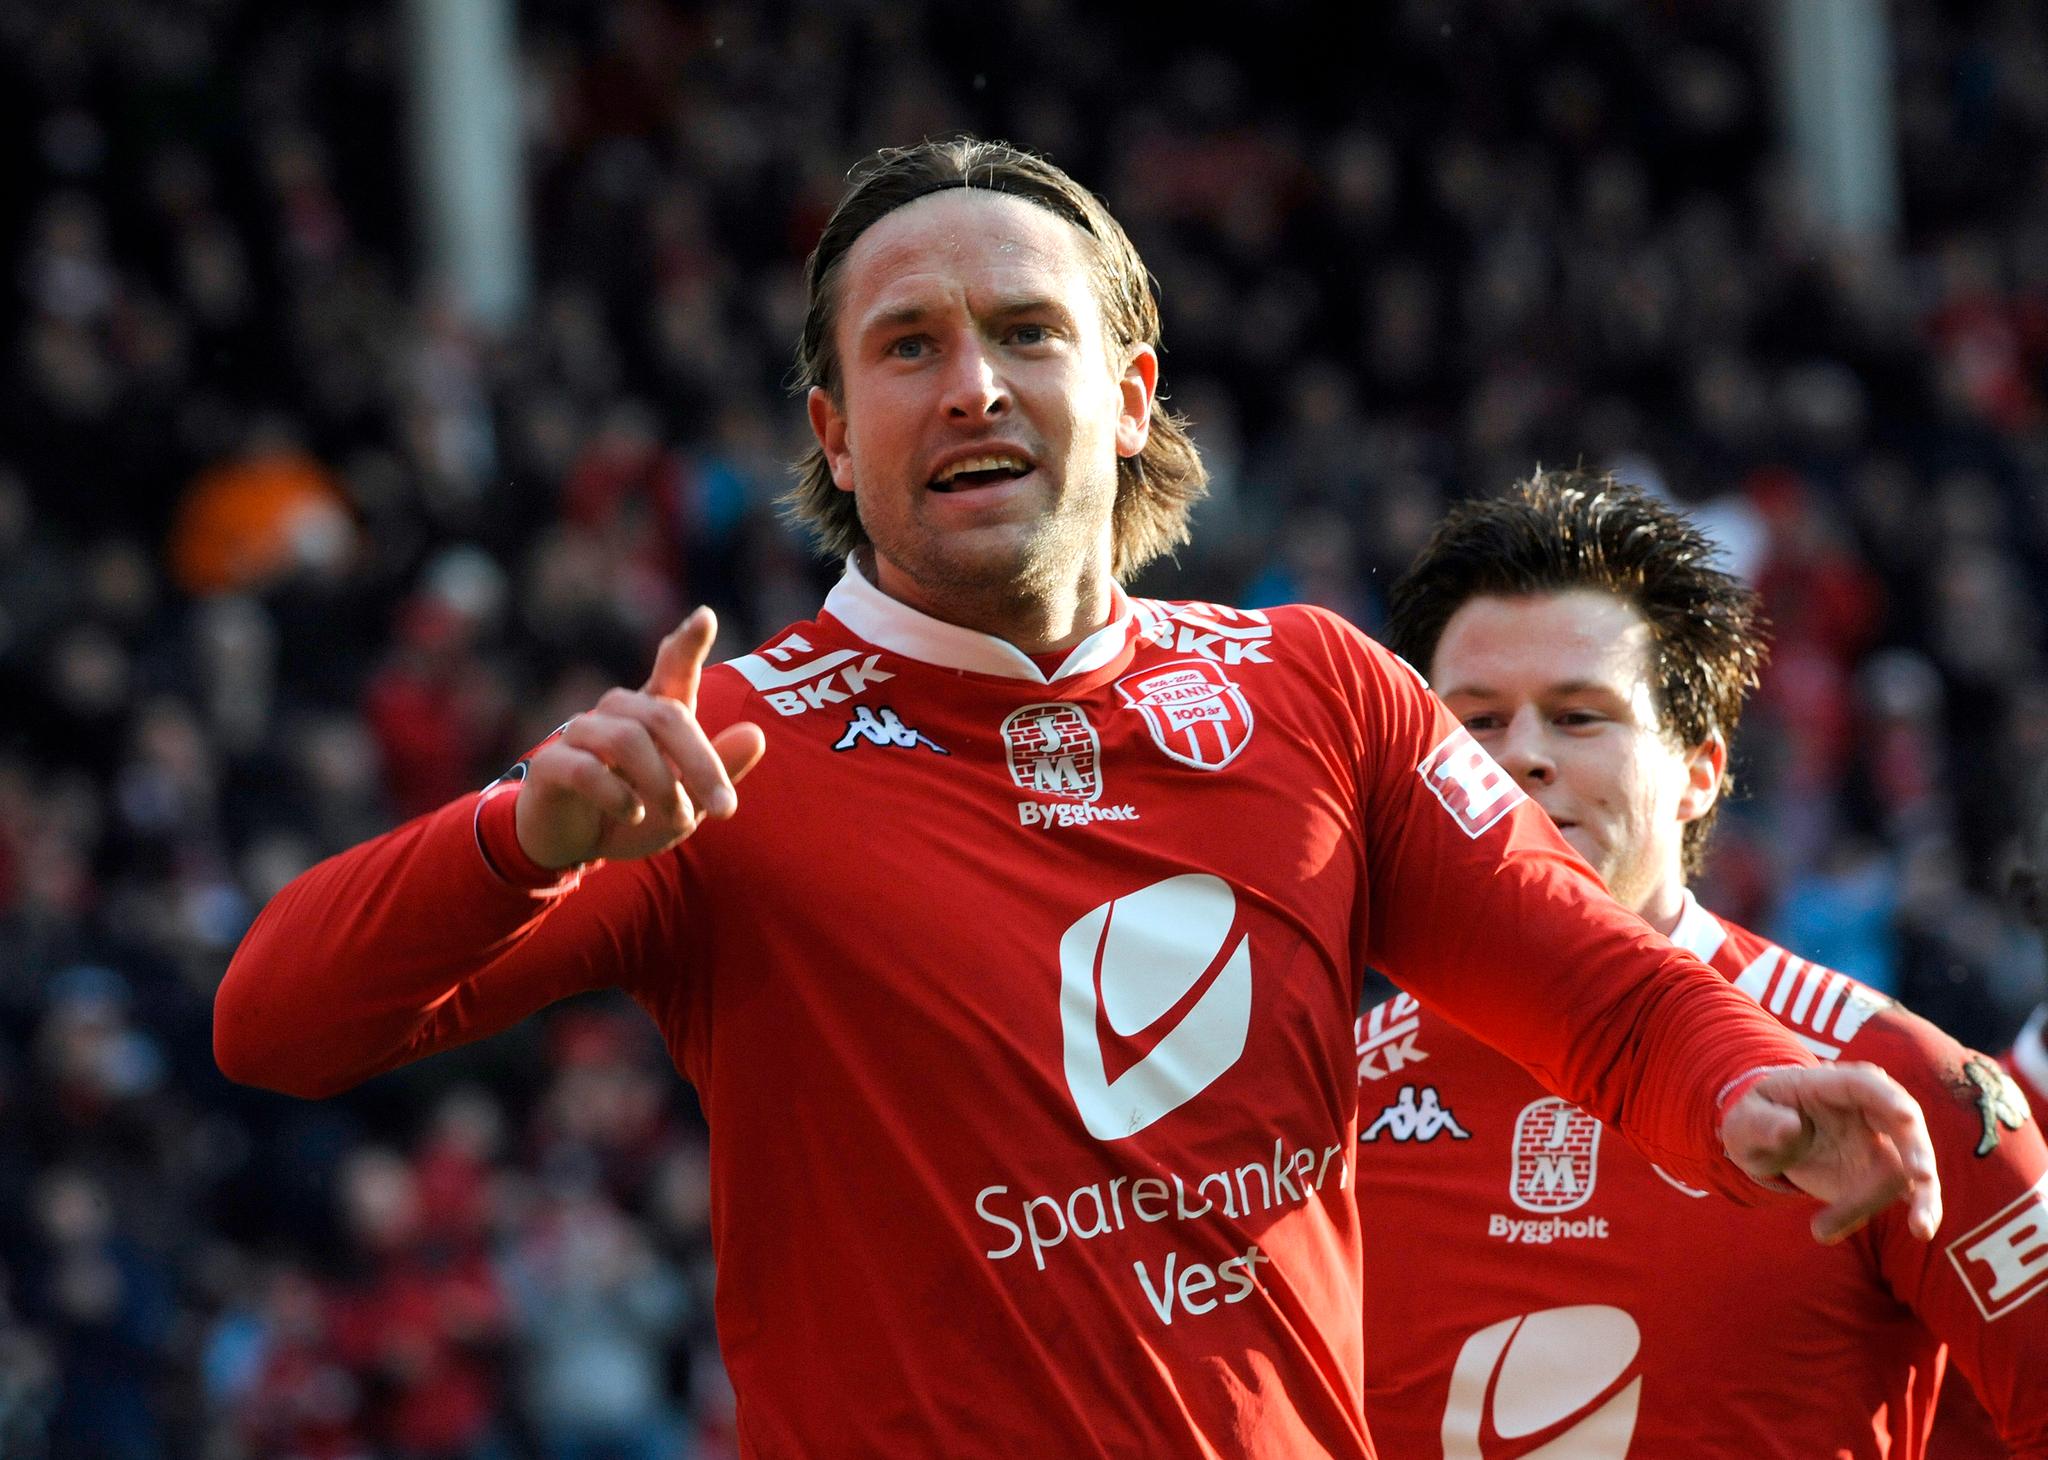 Tidligere Brann-spiller Thorstein Helstad er kritisk til at klubben valgte å fortsette med Lars Arne Nilsen som trener. Her avbildet under en eliteseriekamp i 2008.